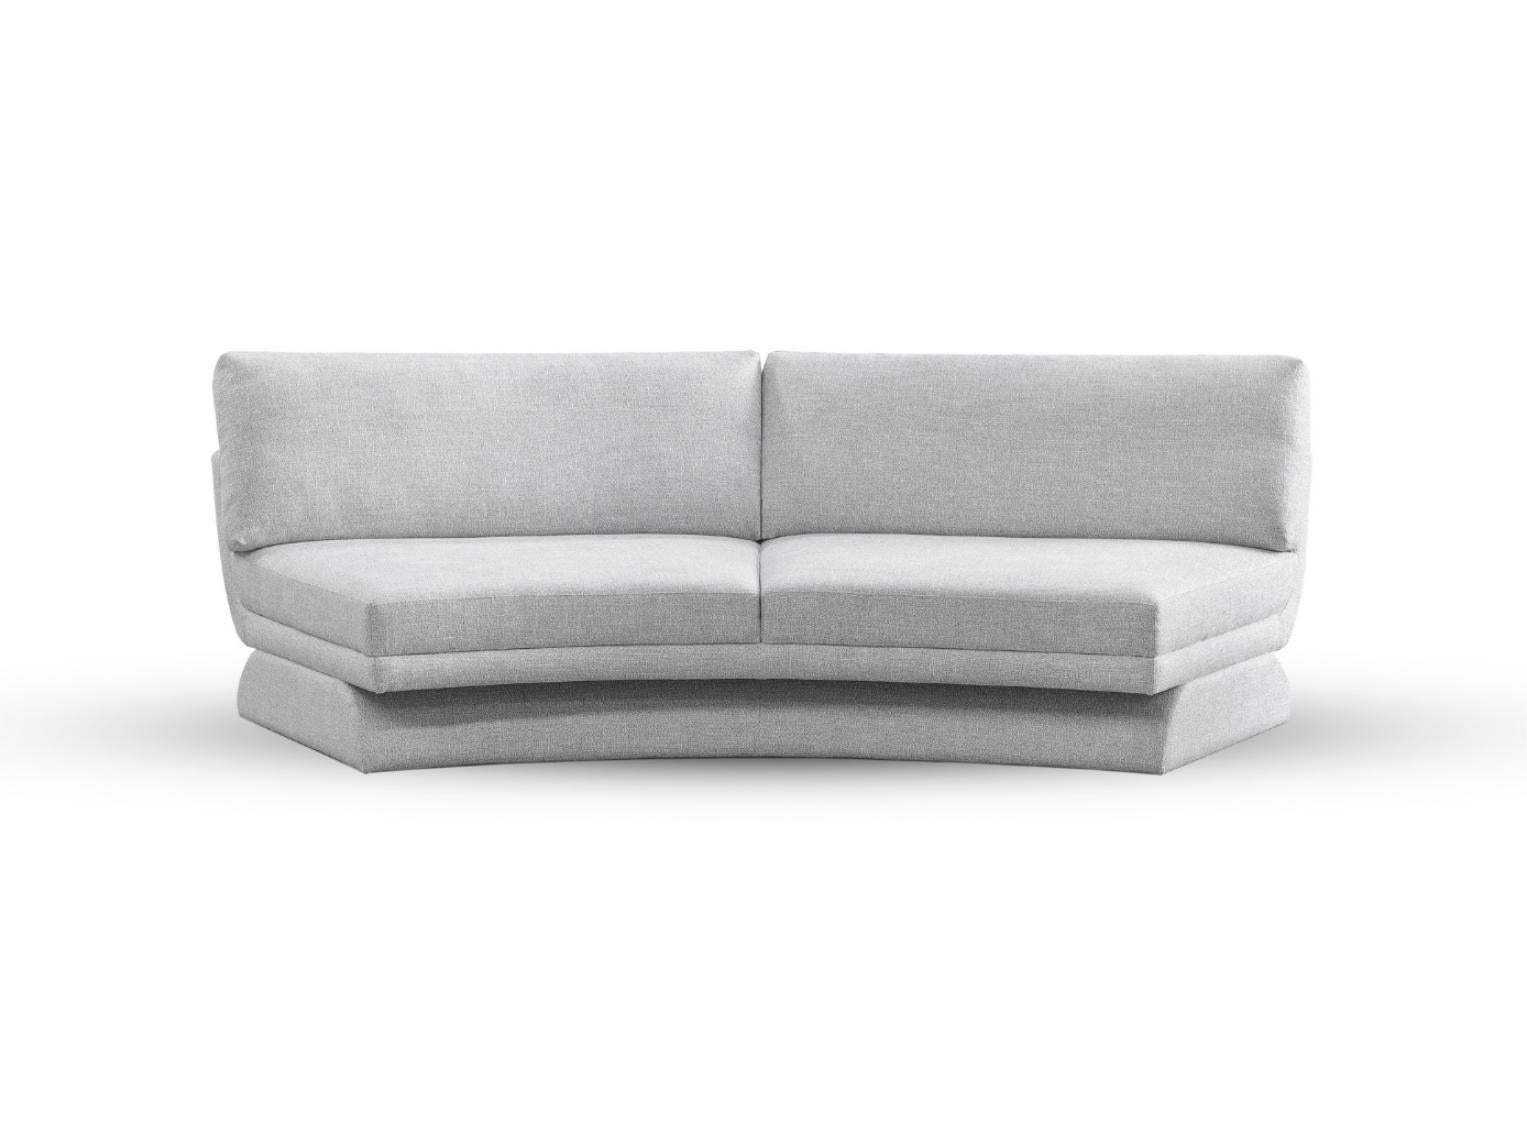 Fabric Oscar Middle Modular Sofa by DUISTT  For Sale